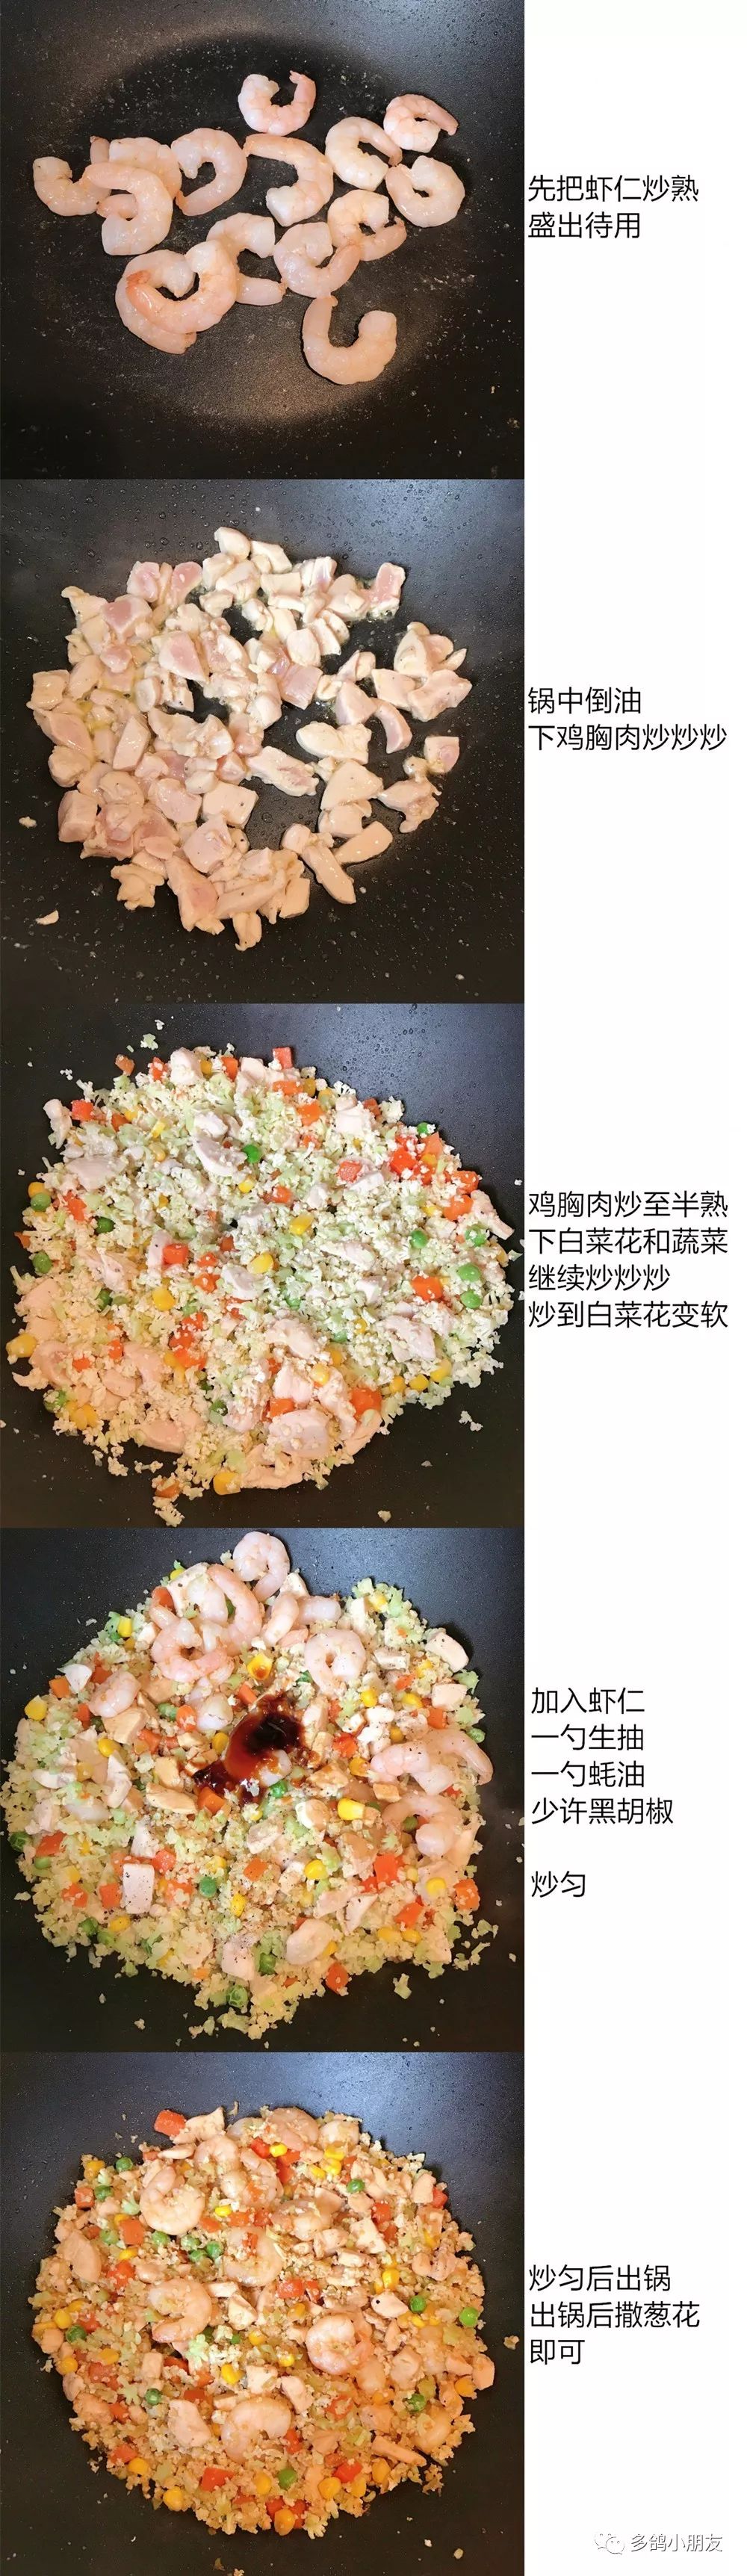 无米炒饭 欧阳娜娜推荐的减肥菜谱 没有米也可以吃到美味的炒饭哦 菜花